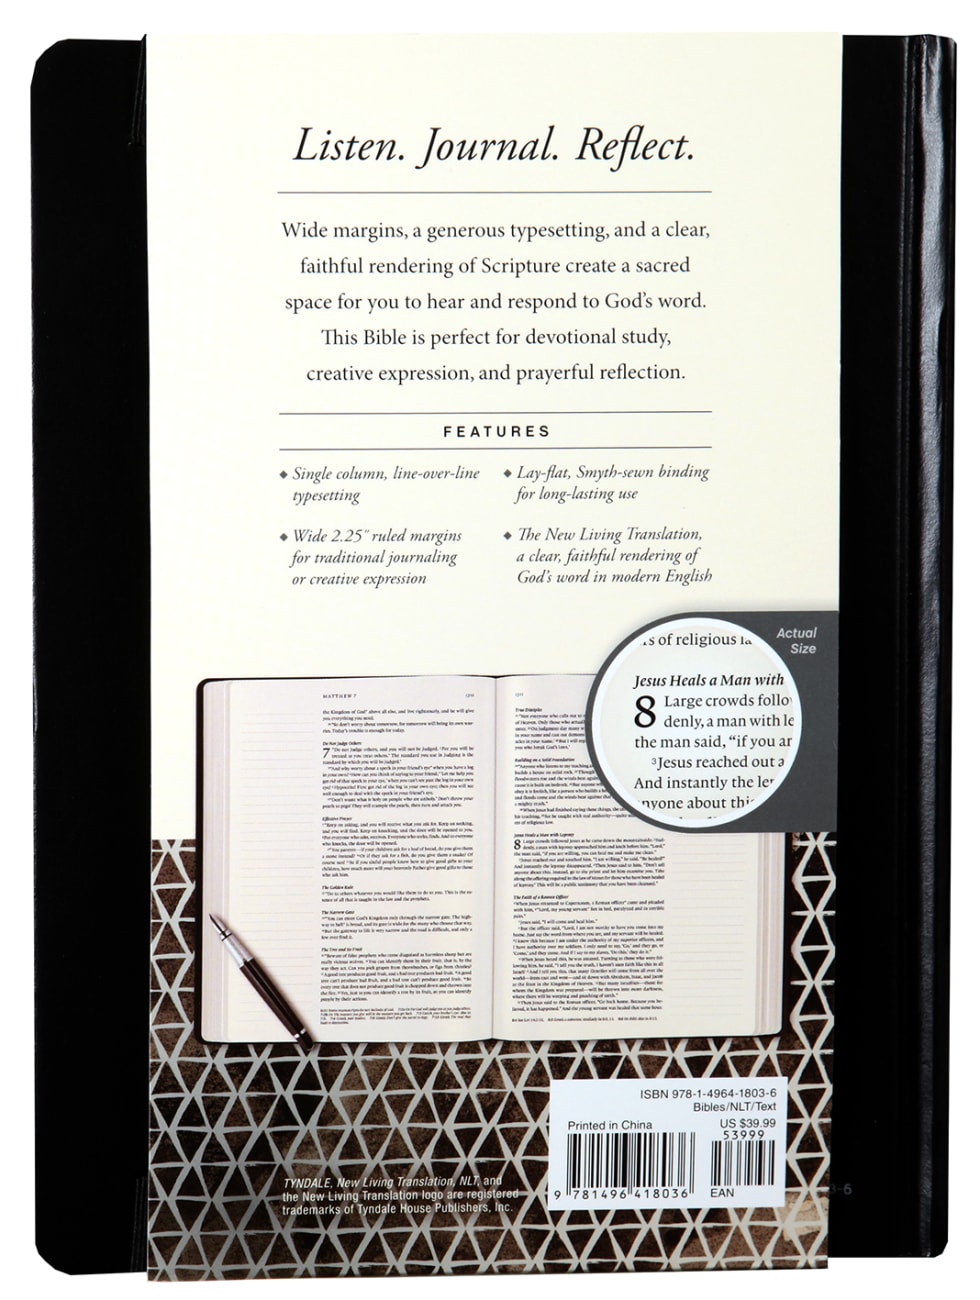 NLT Reflections Bible Sketchbook Black (Black Letter Edition) Imitation Leather Over Hardback